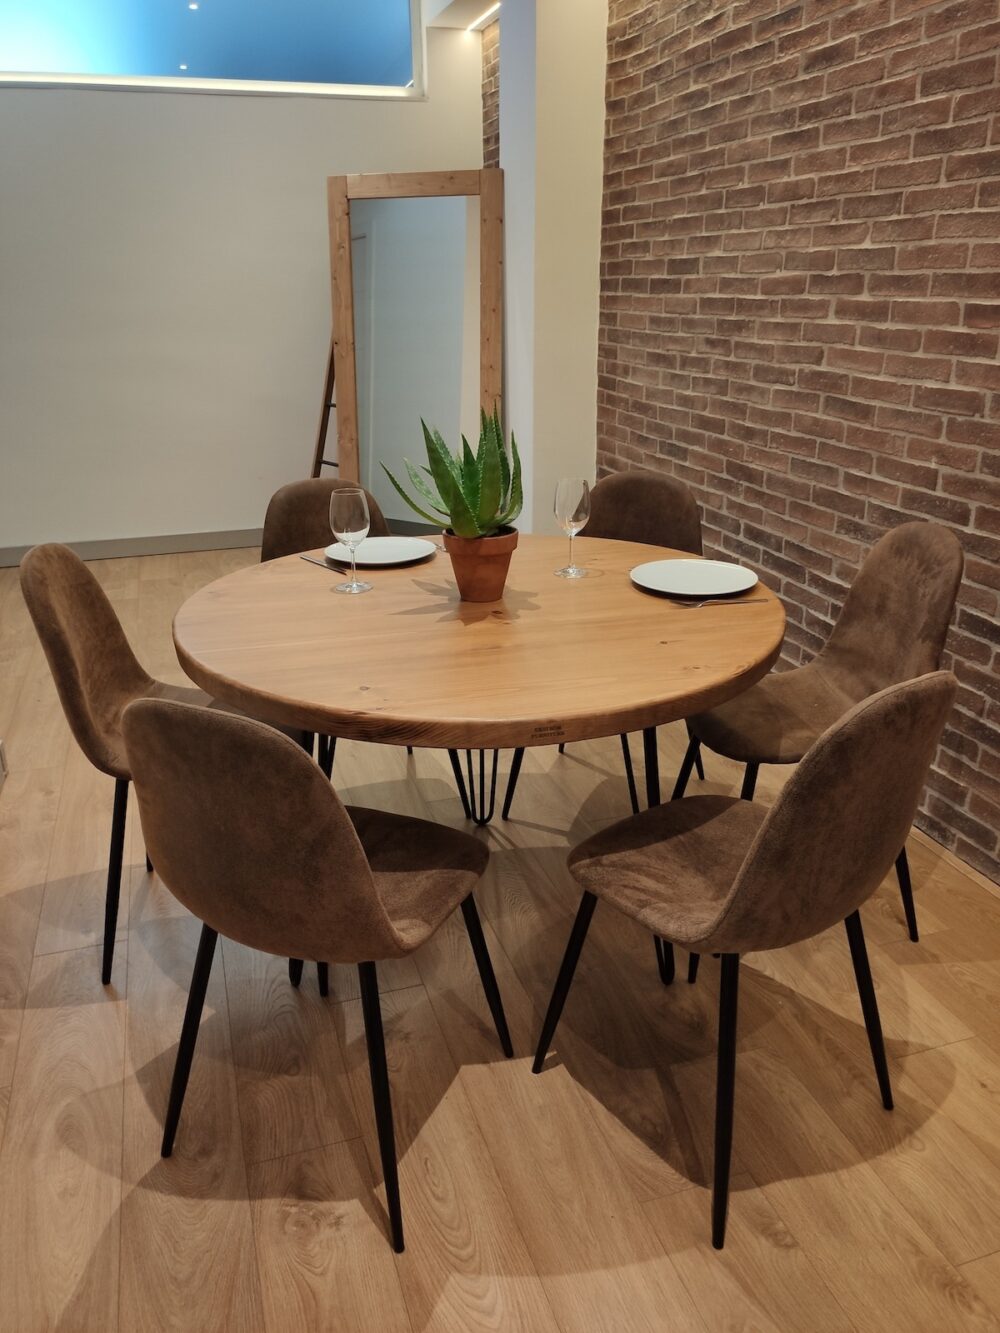 Mesa redonda de madera maciza con 6 sillas alrededor en un salón de estilo industrial